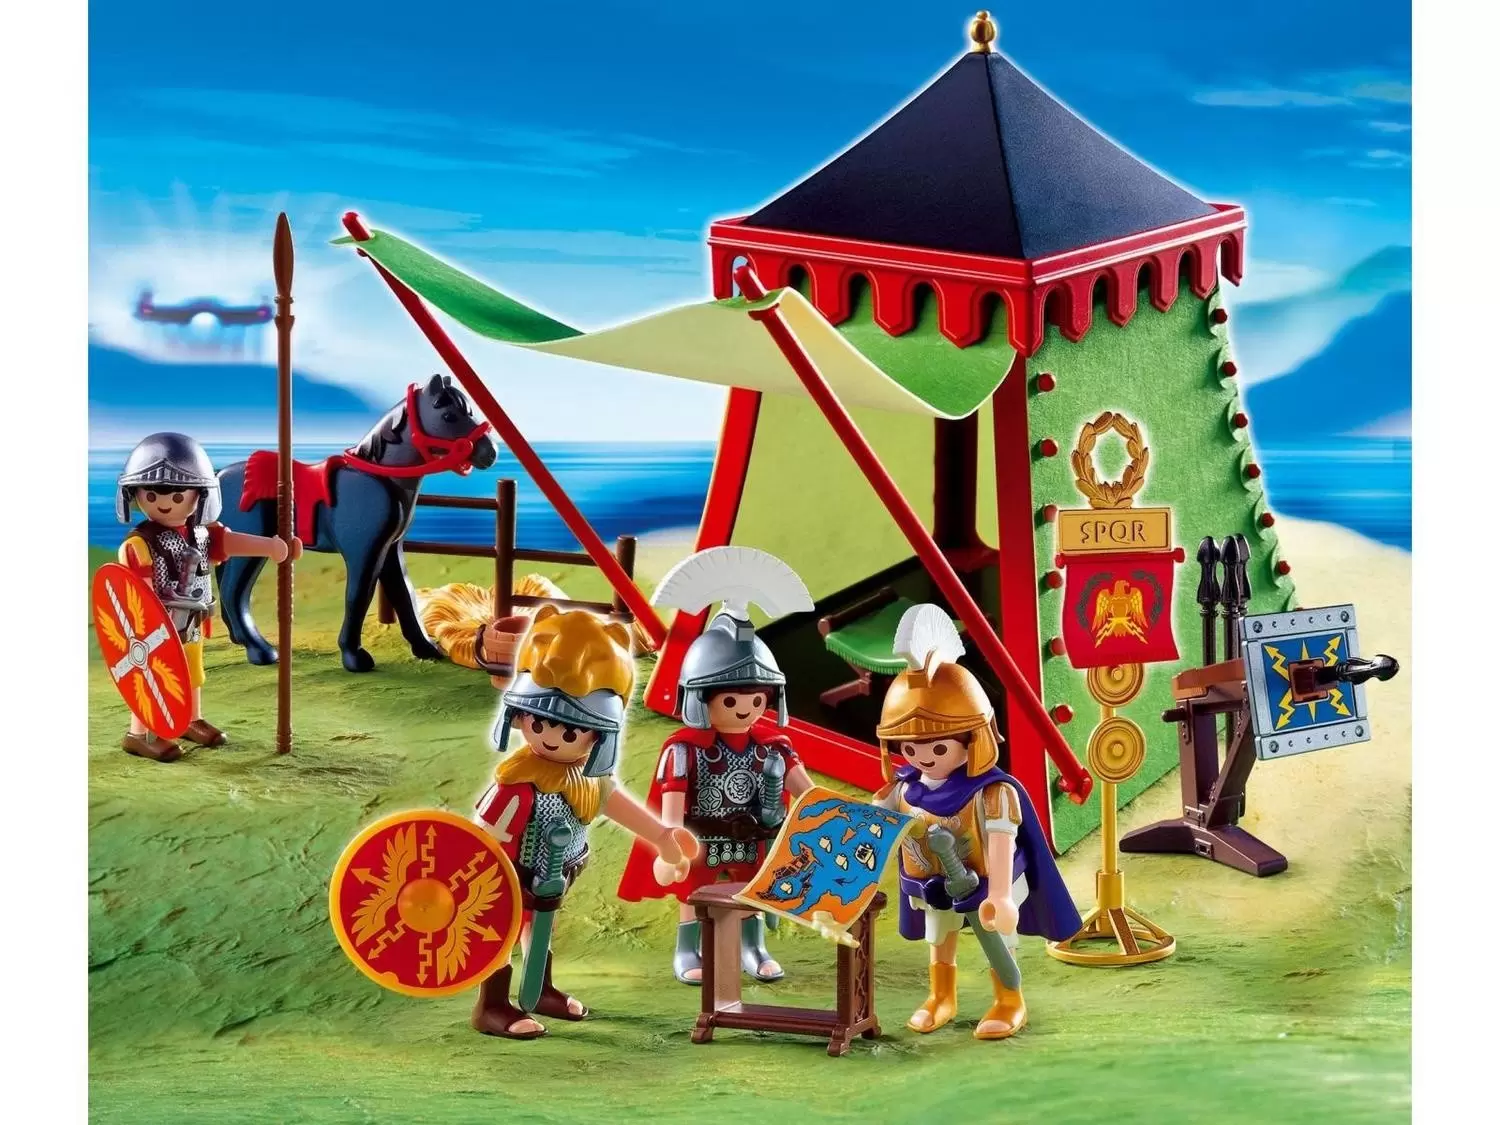 Playmobil - 4275 - Romains - Romains / Tour d'assaut 